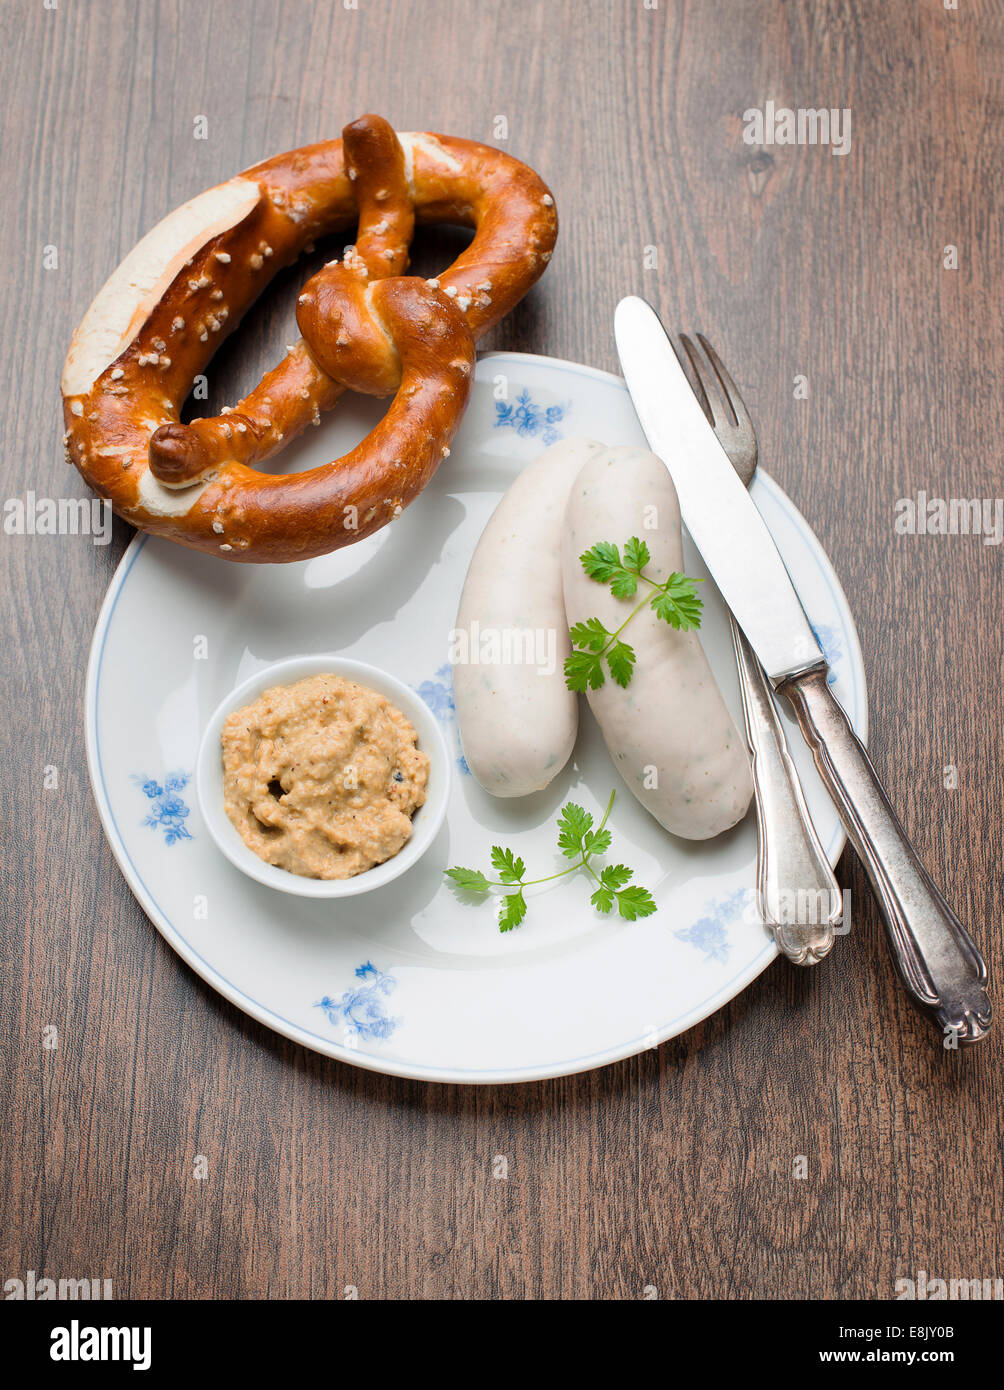 Savoury German Sausages Stock Photo